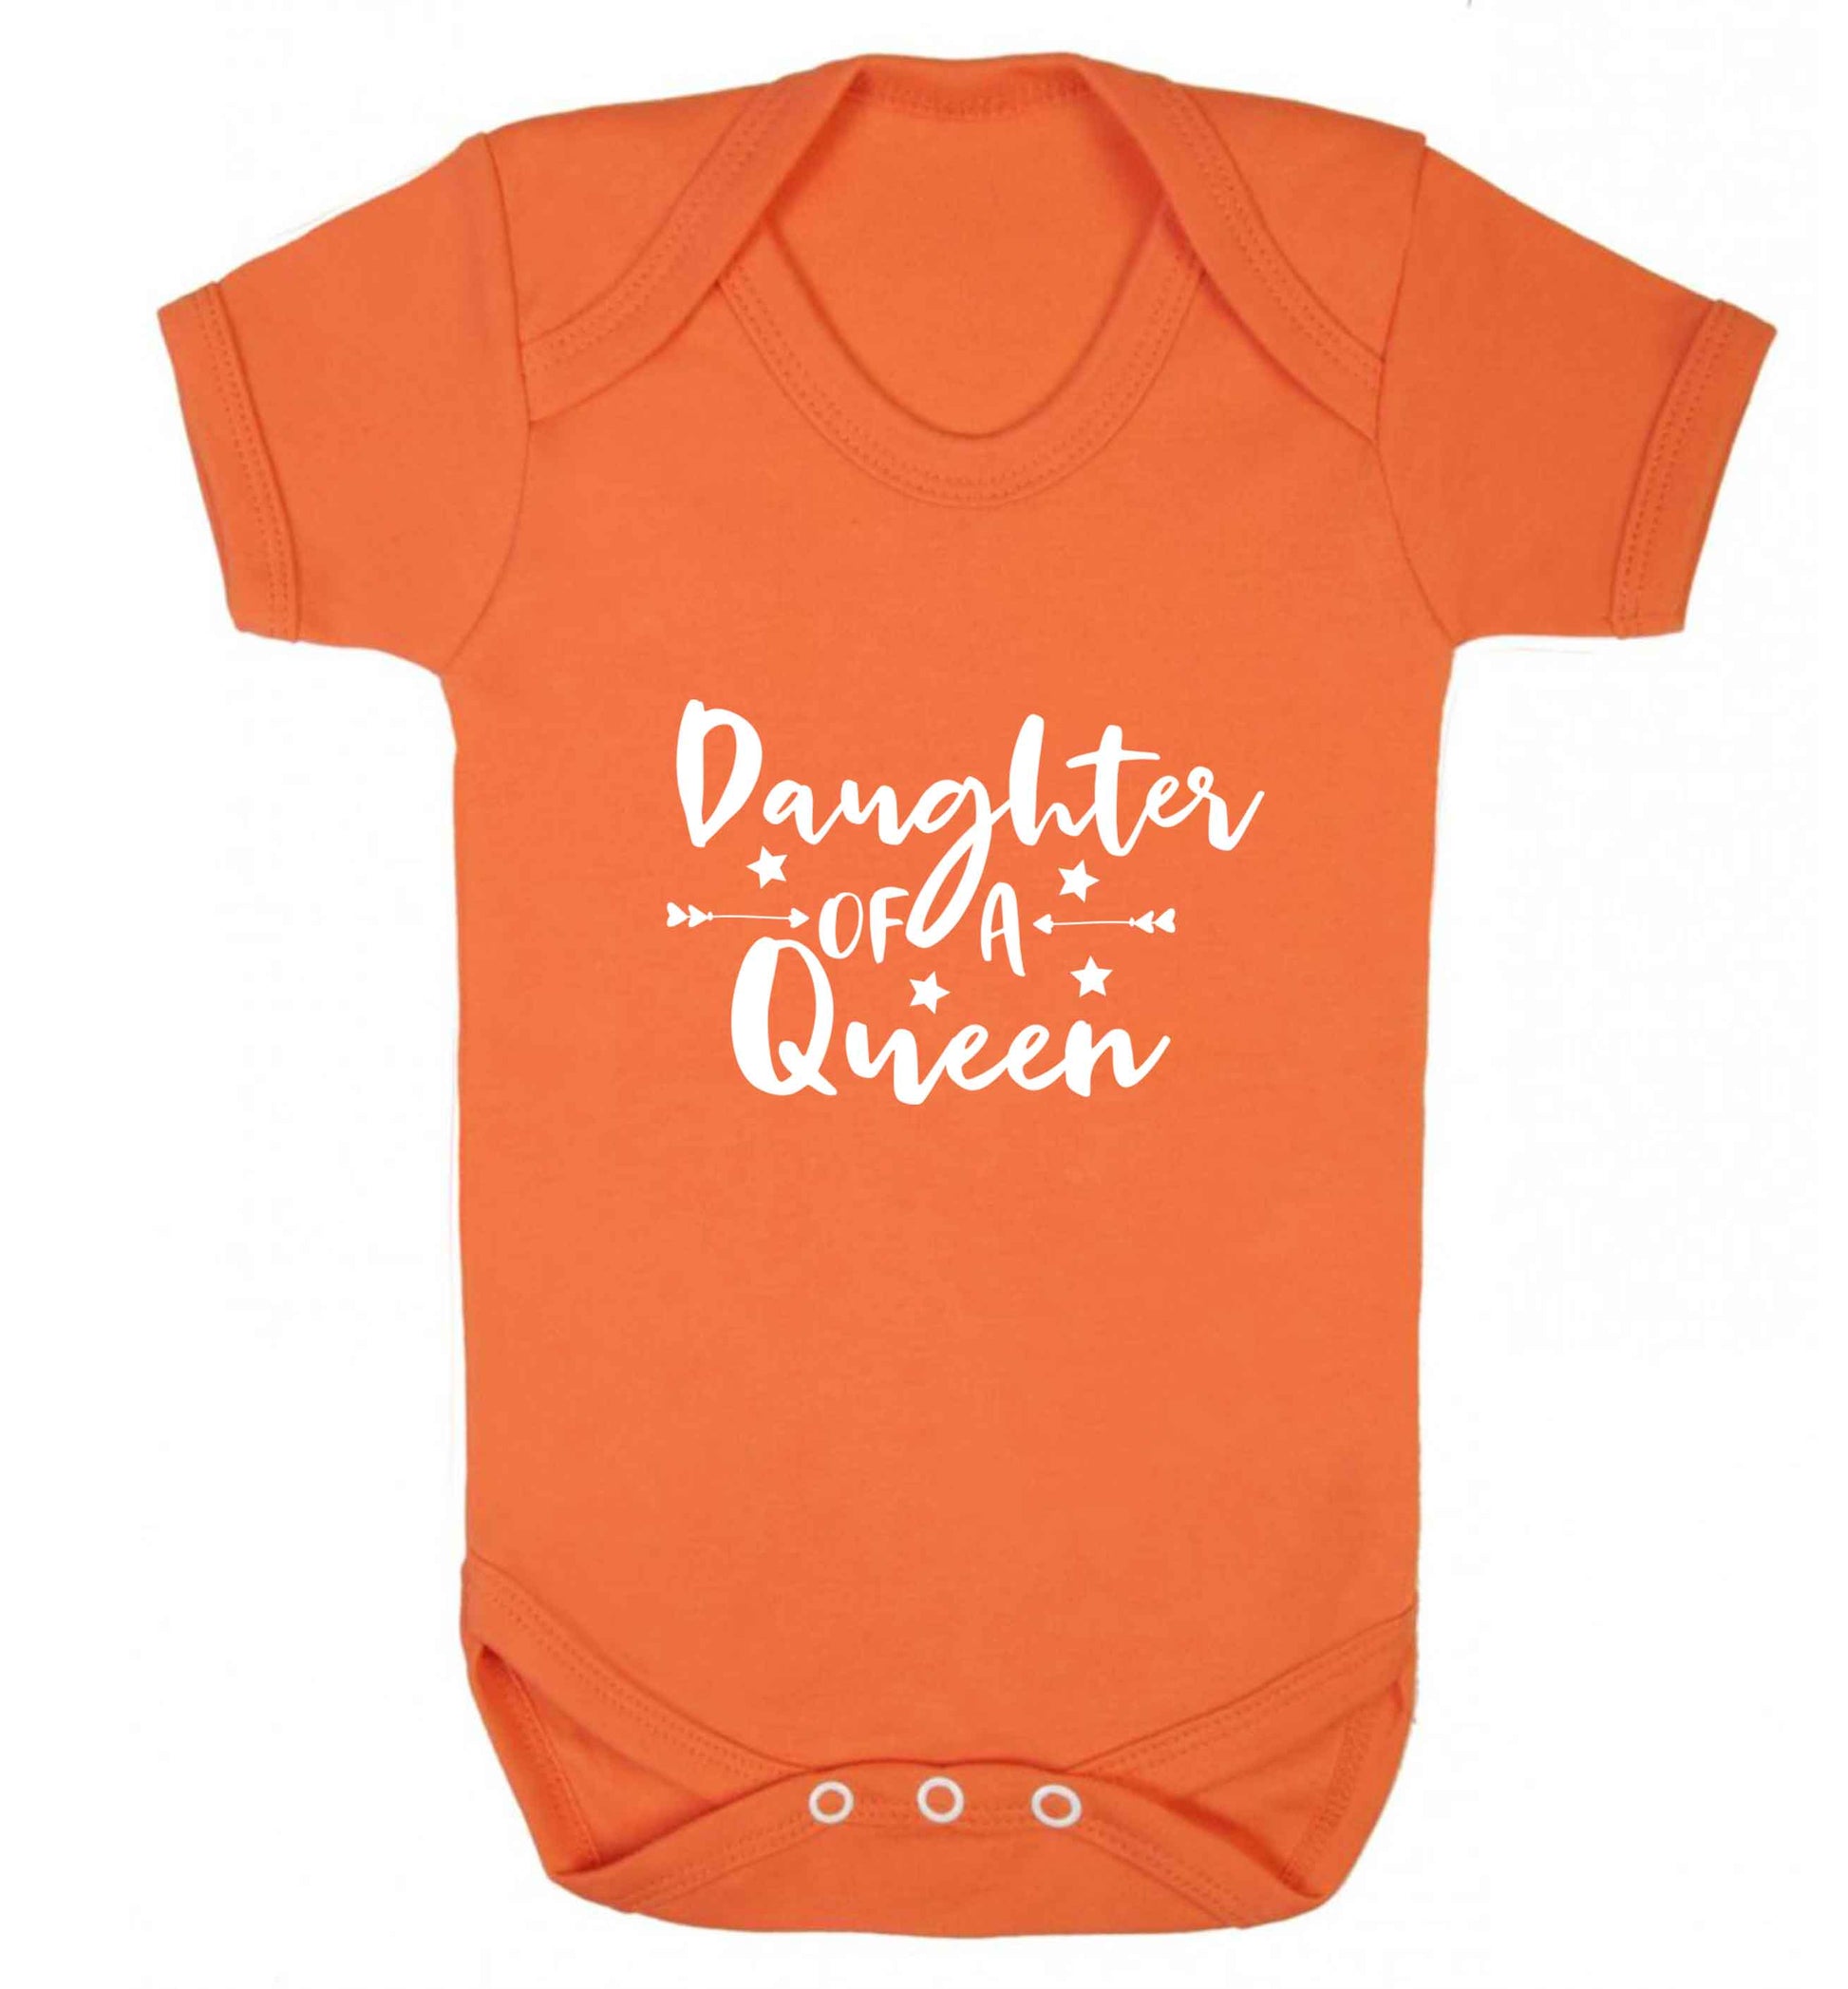 Daughter of a Queen baby vest orange 18-24 months